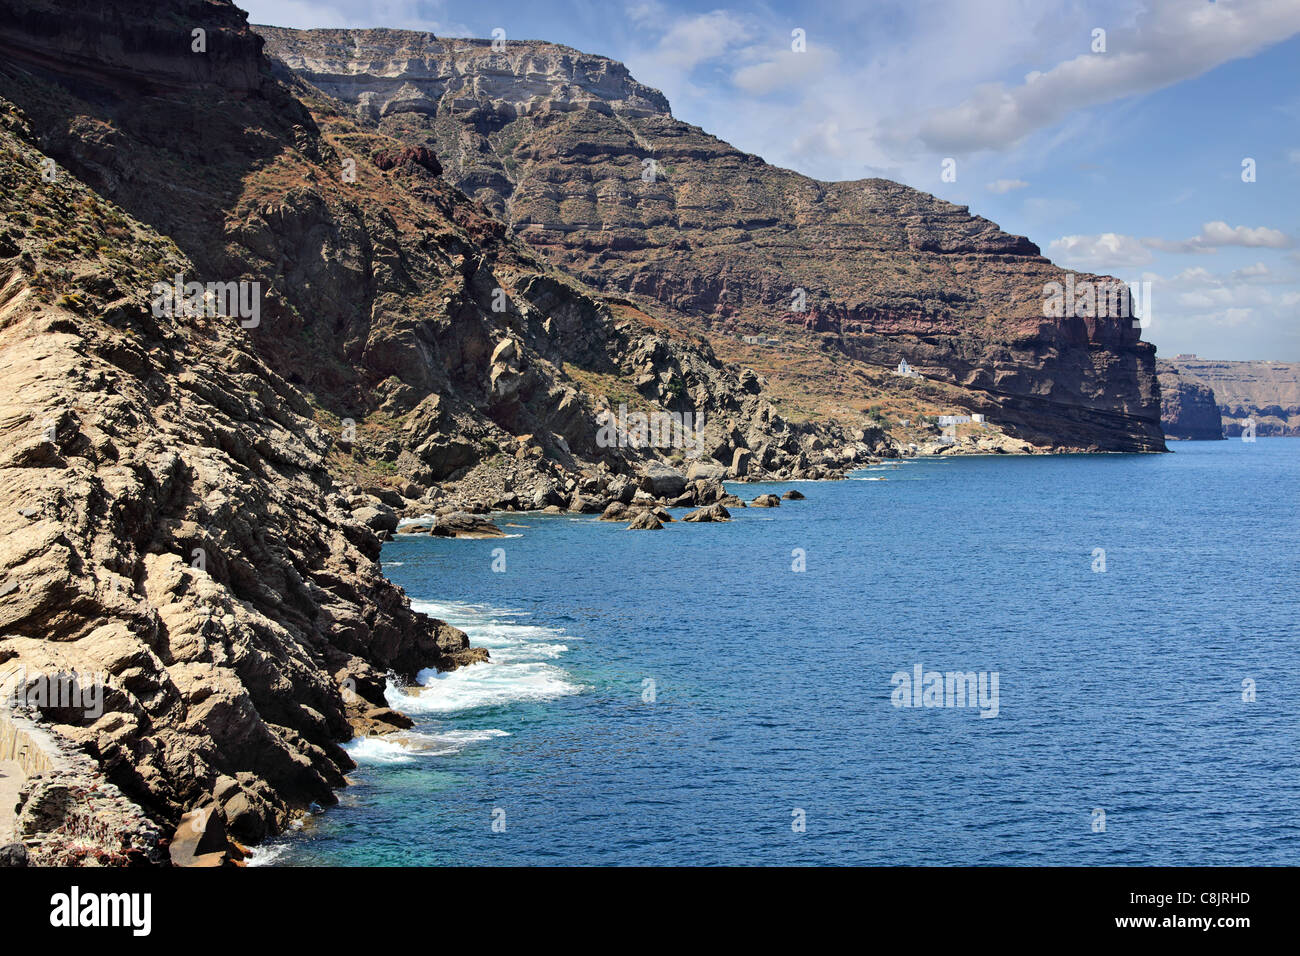 La isla de Santorini, Grecia. Entrada del nuevo puerto. Foto de stock